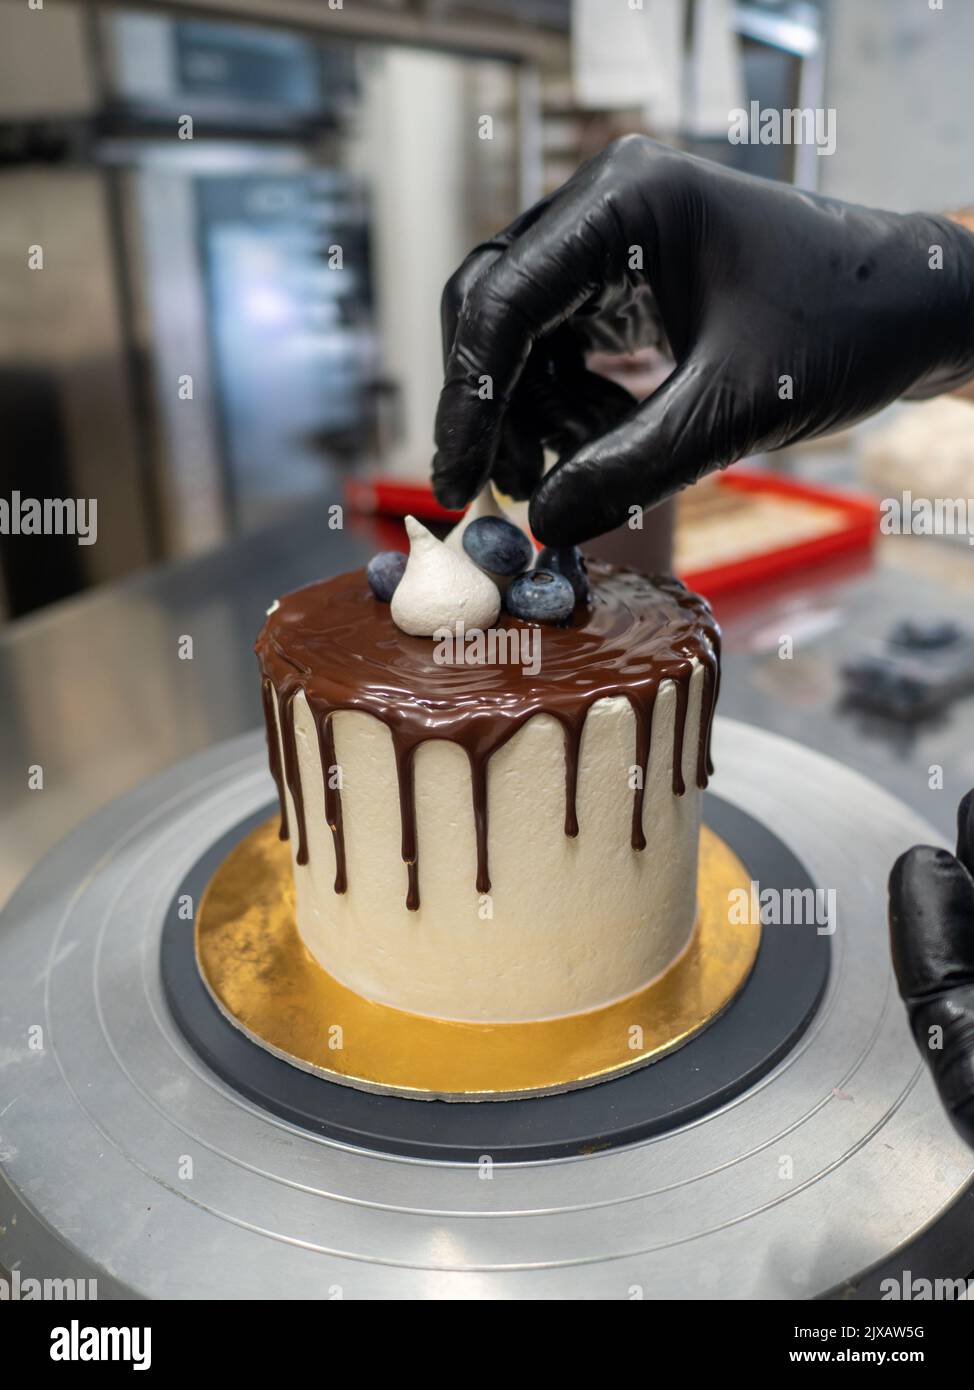 trabajador irreconocible preparando una torta de chocolate y bayas que gotean dulces Foto de stock